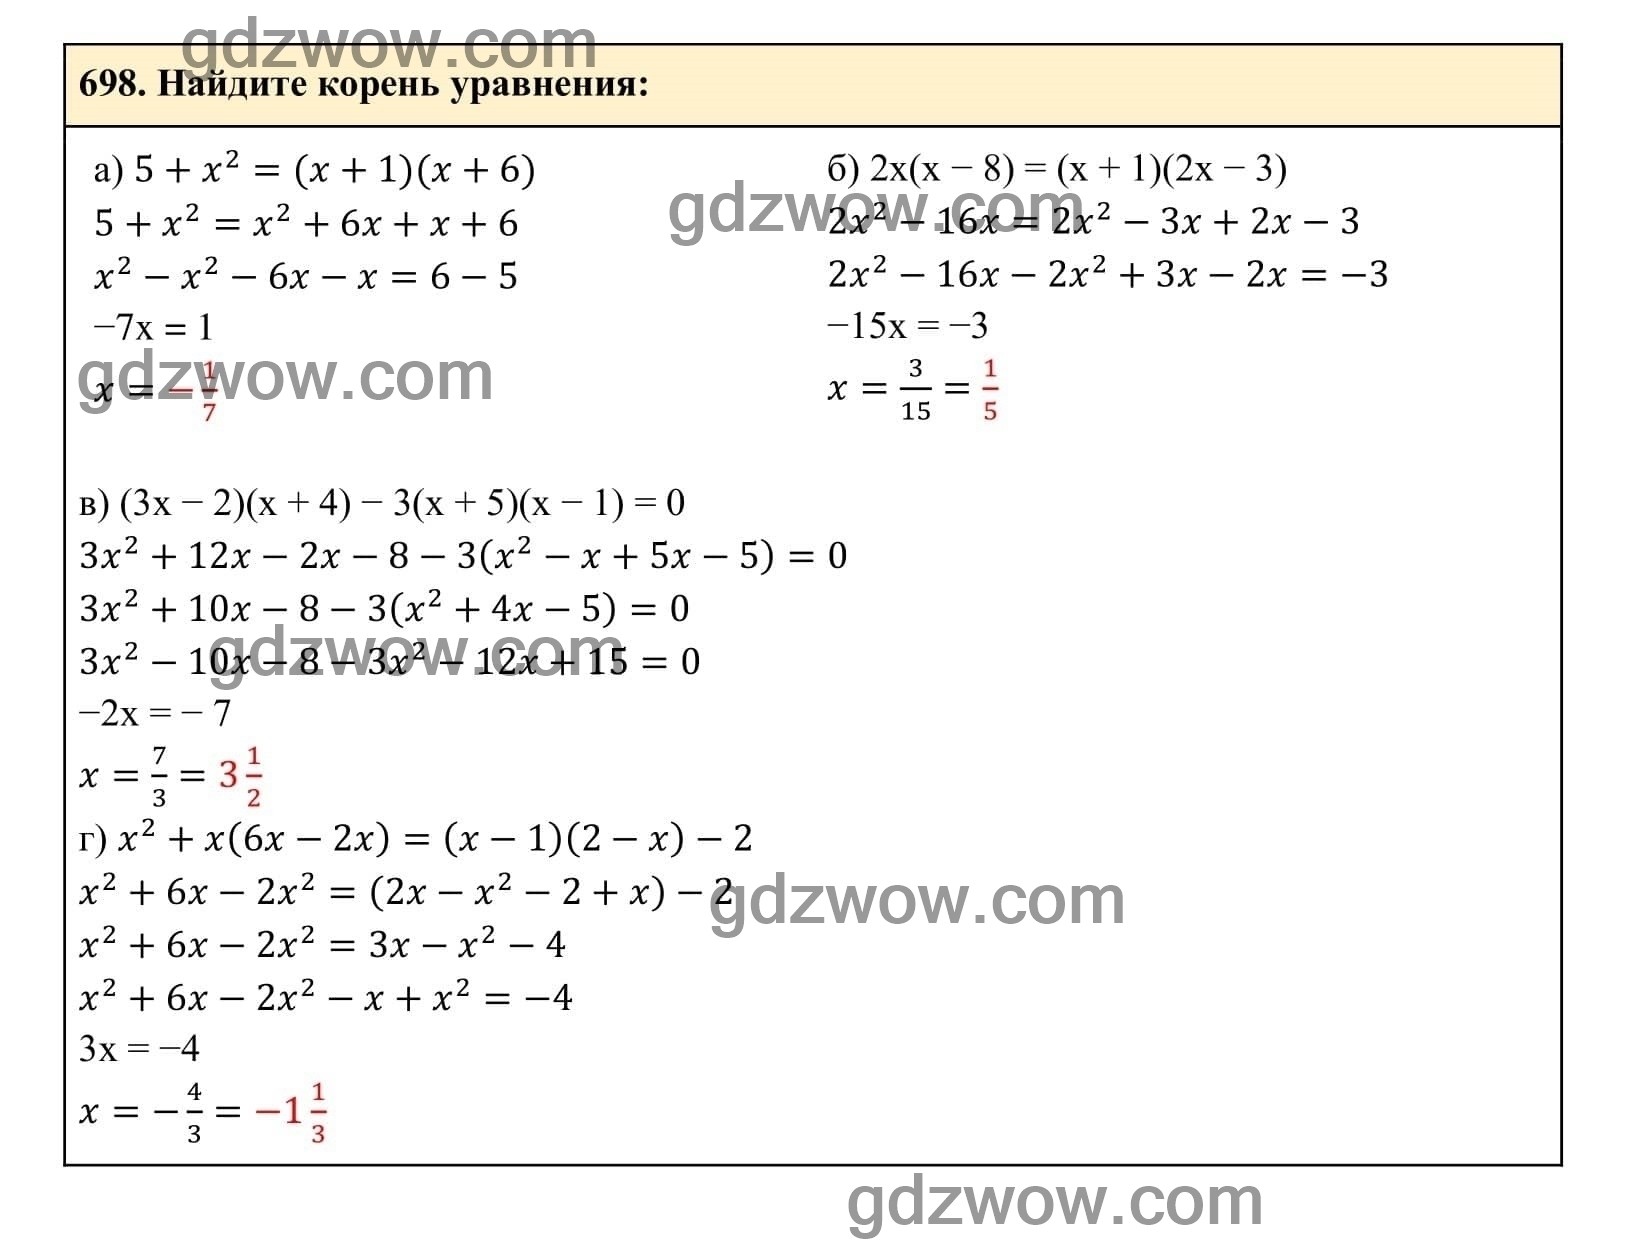 Упражнение 698 - ГДЗ по Алгебре 7 класс Учебник Макарычев (решебник) - GDZwow